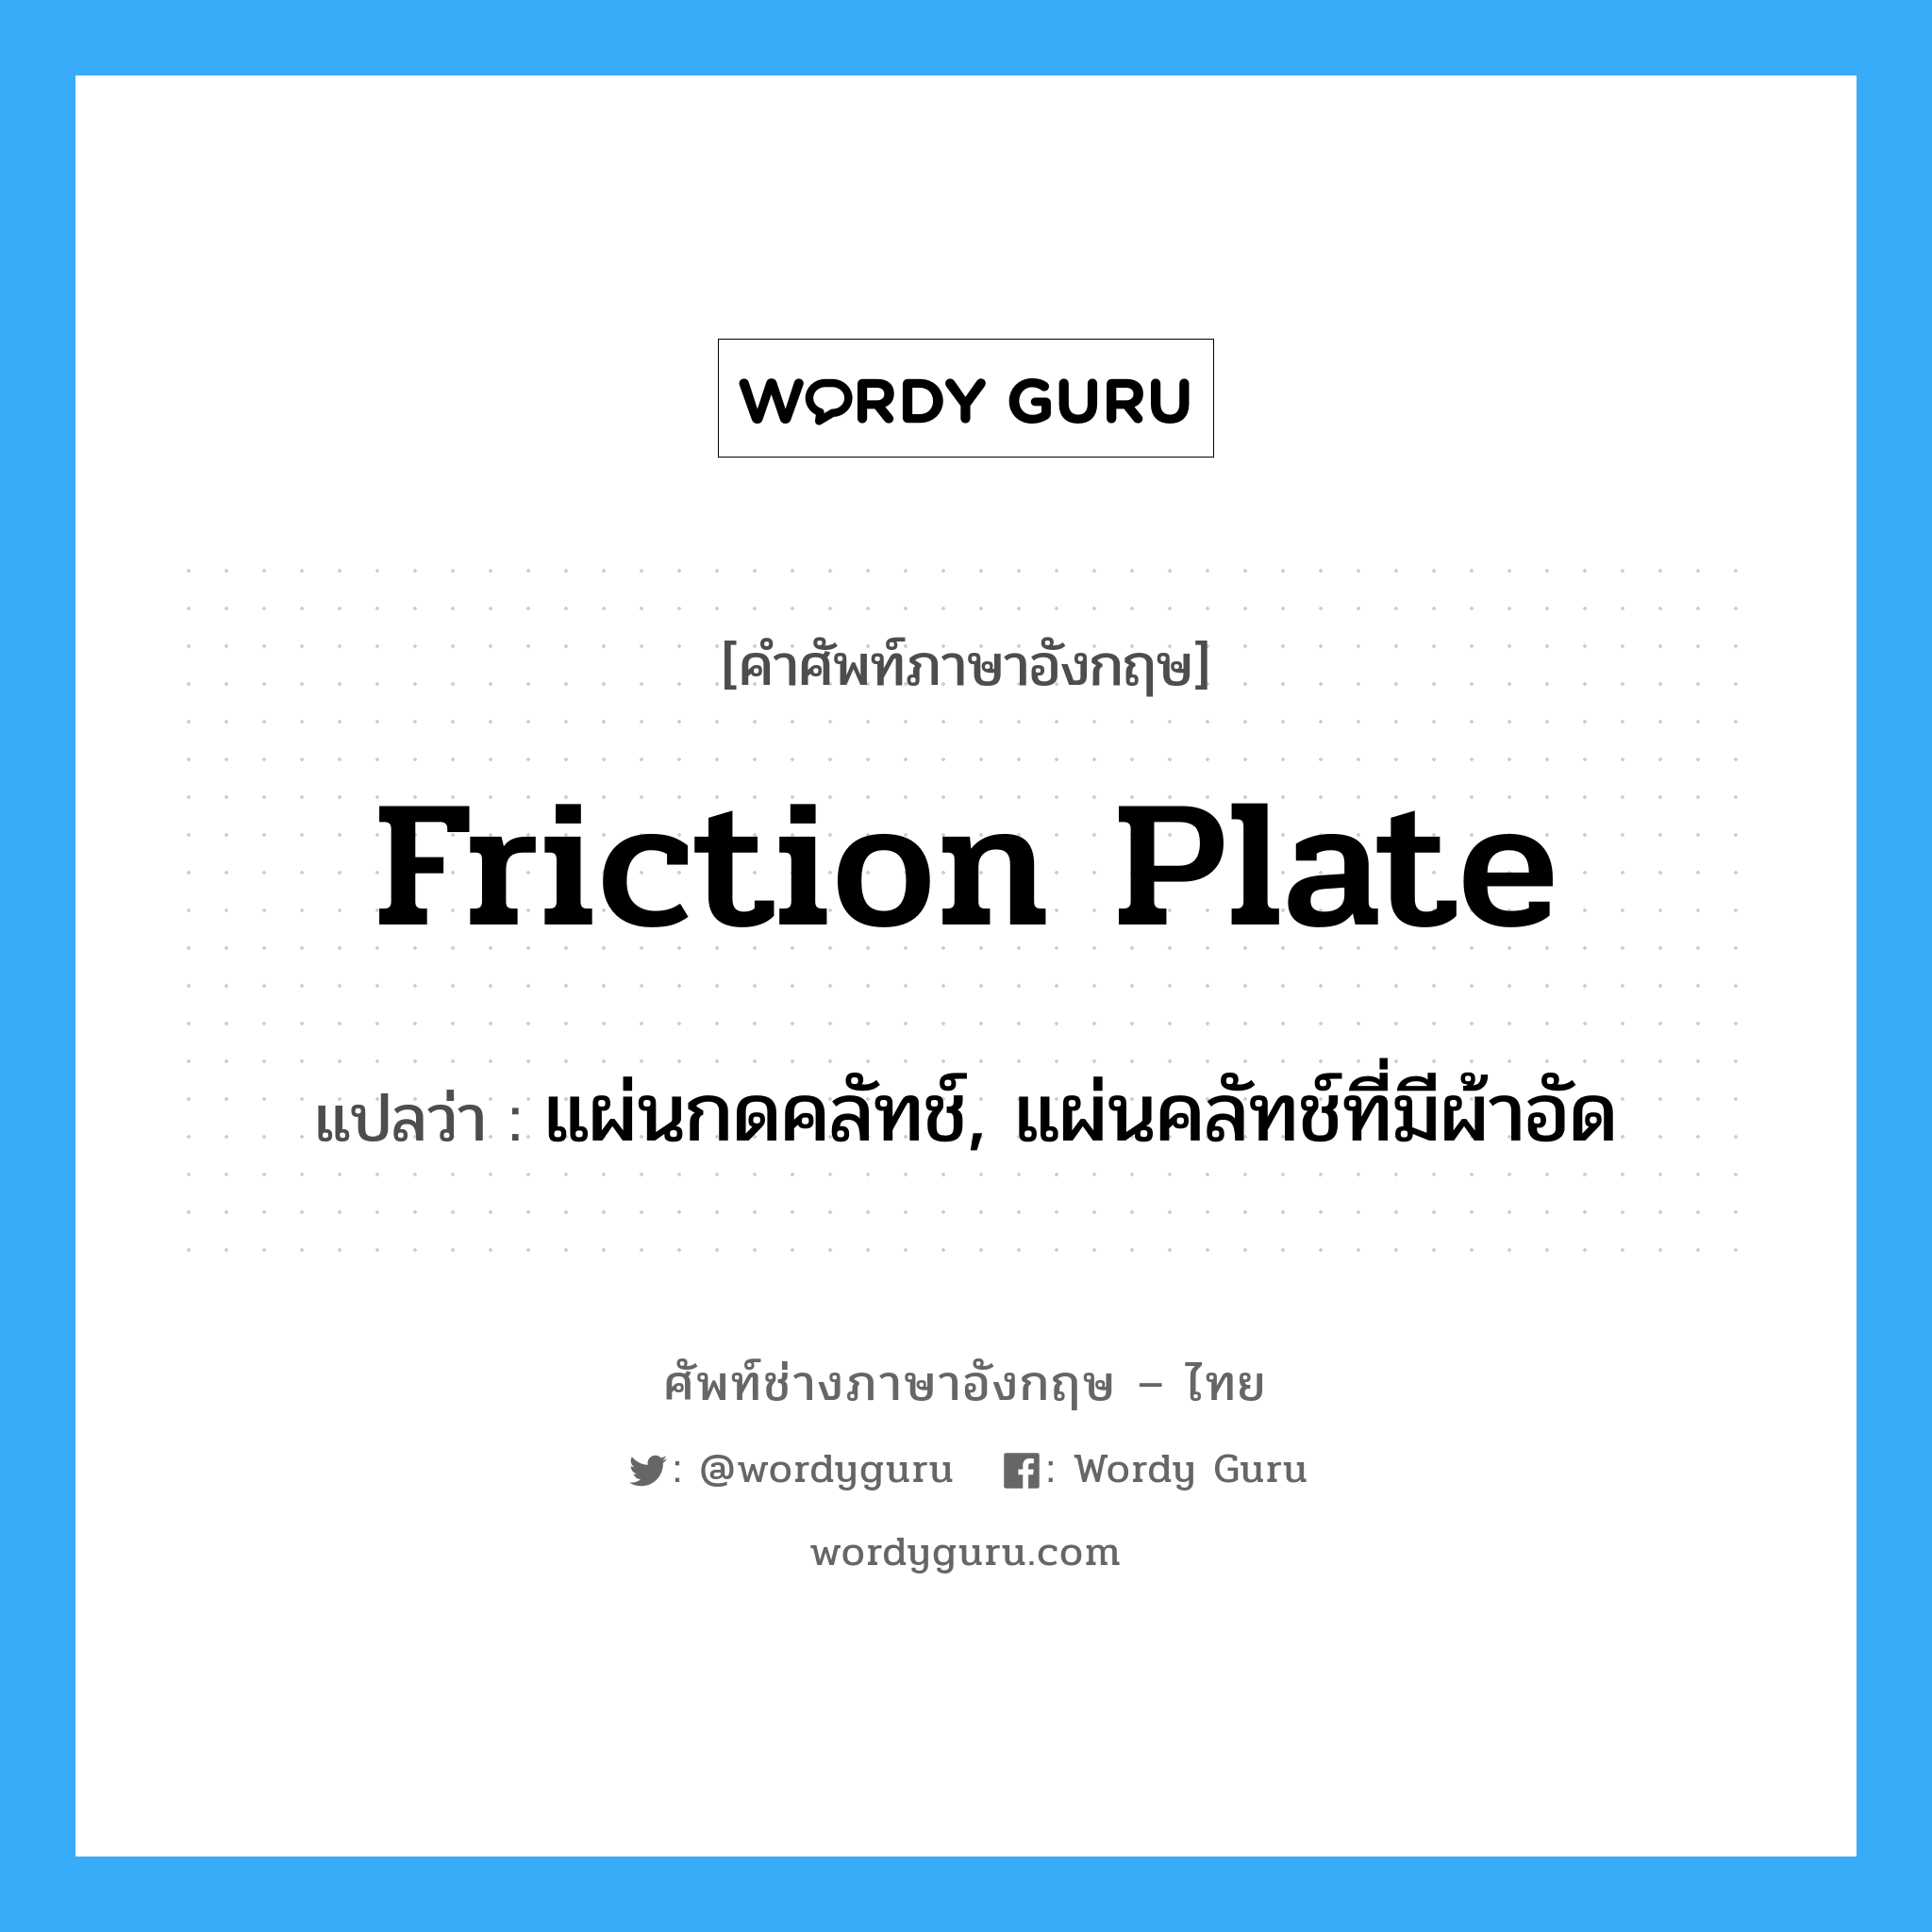 friction plate แปลว่า?, คำศัพท์ช่างภาษาอังกฤษ - ไทย friction plate คำศัพท์ภาษาอังกฤษ friction plate แปลว่า แผ่นกดคลัทช์, แผ่นคลัทช์ที่มีผ้าอัด